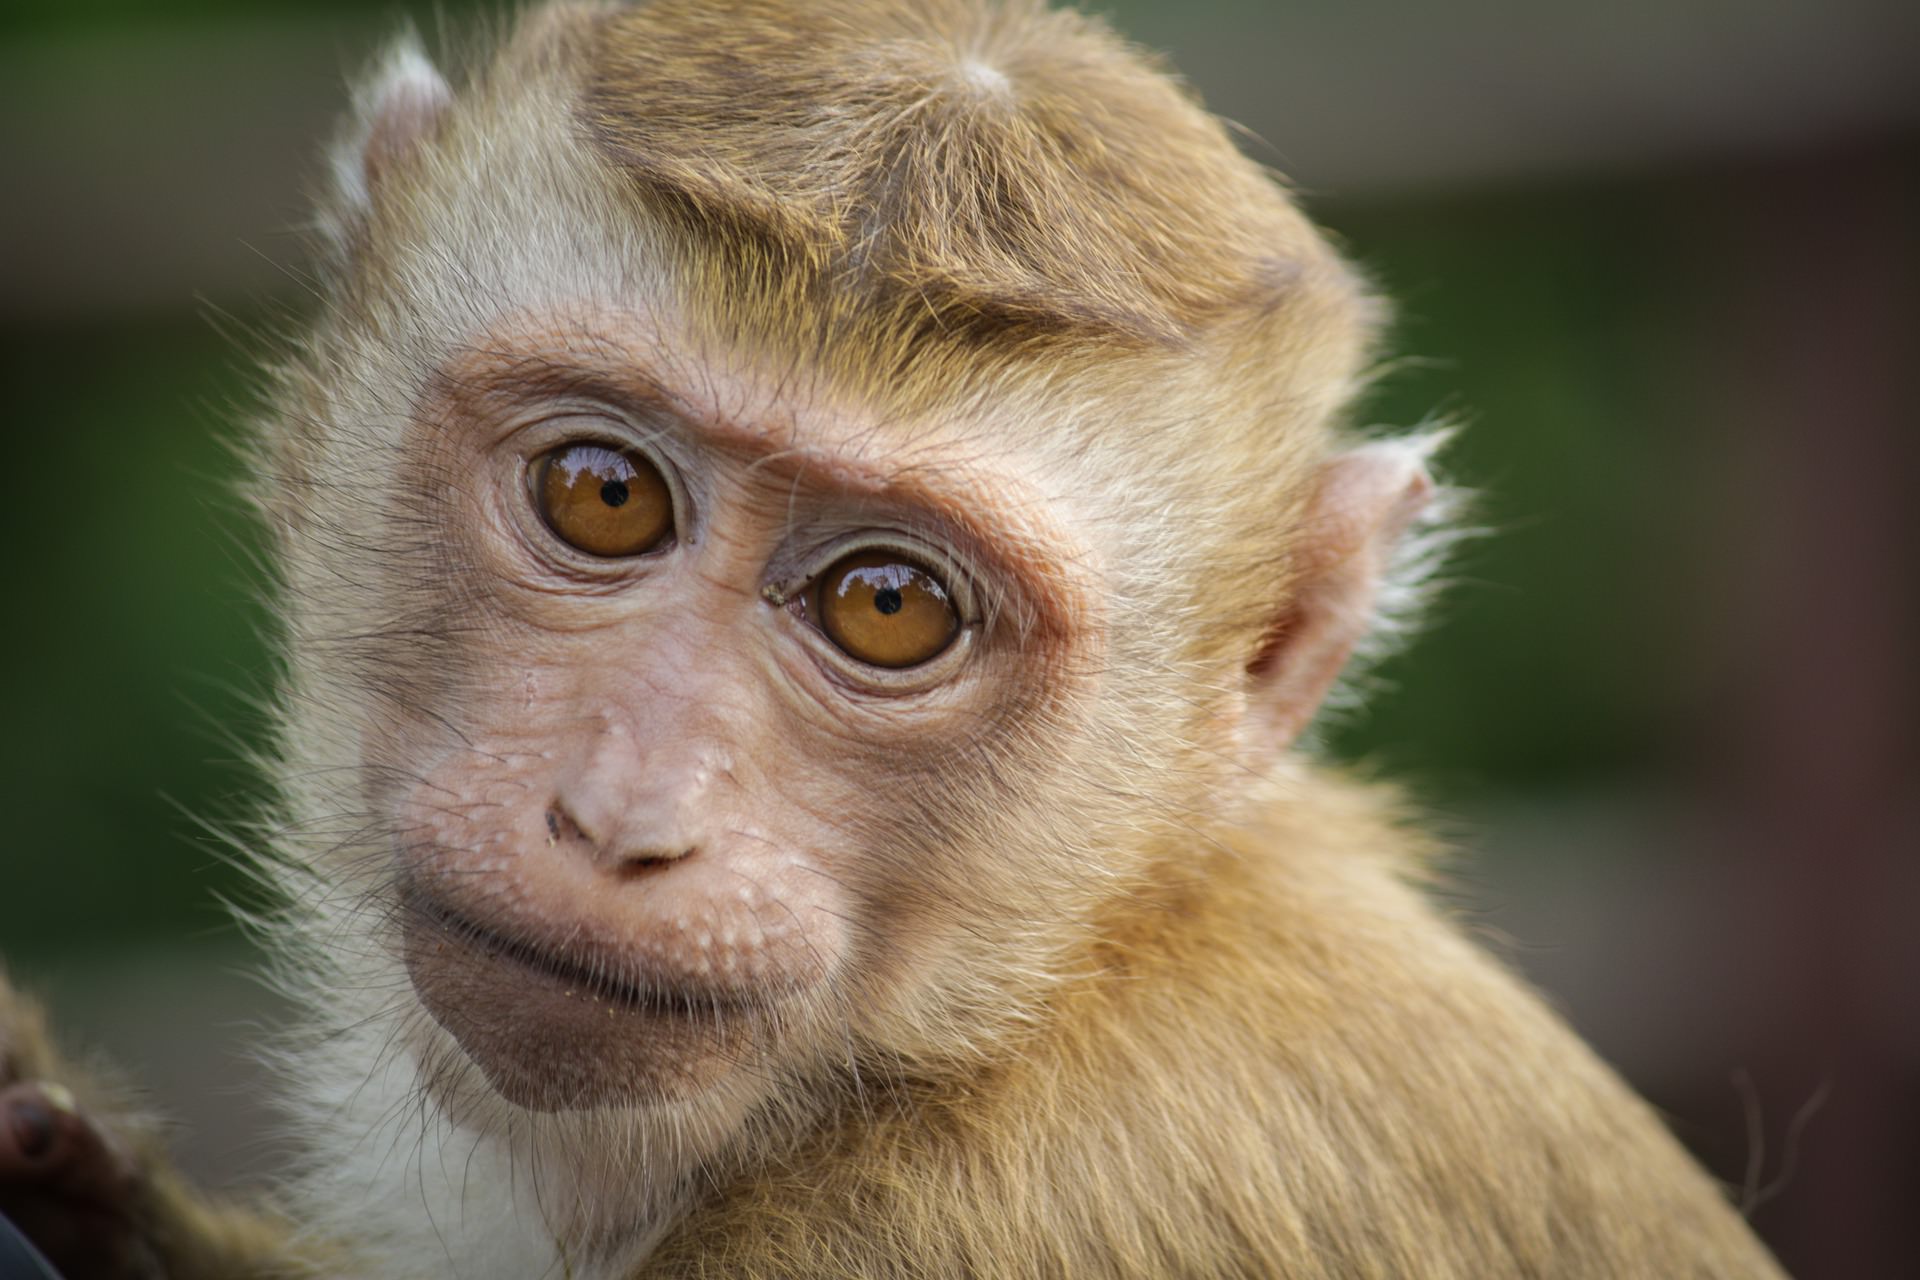 Com mortes de macacos, cientistas temem novo surto de febre amarela